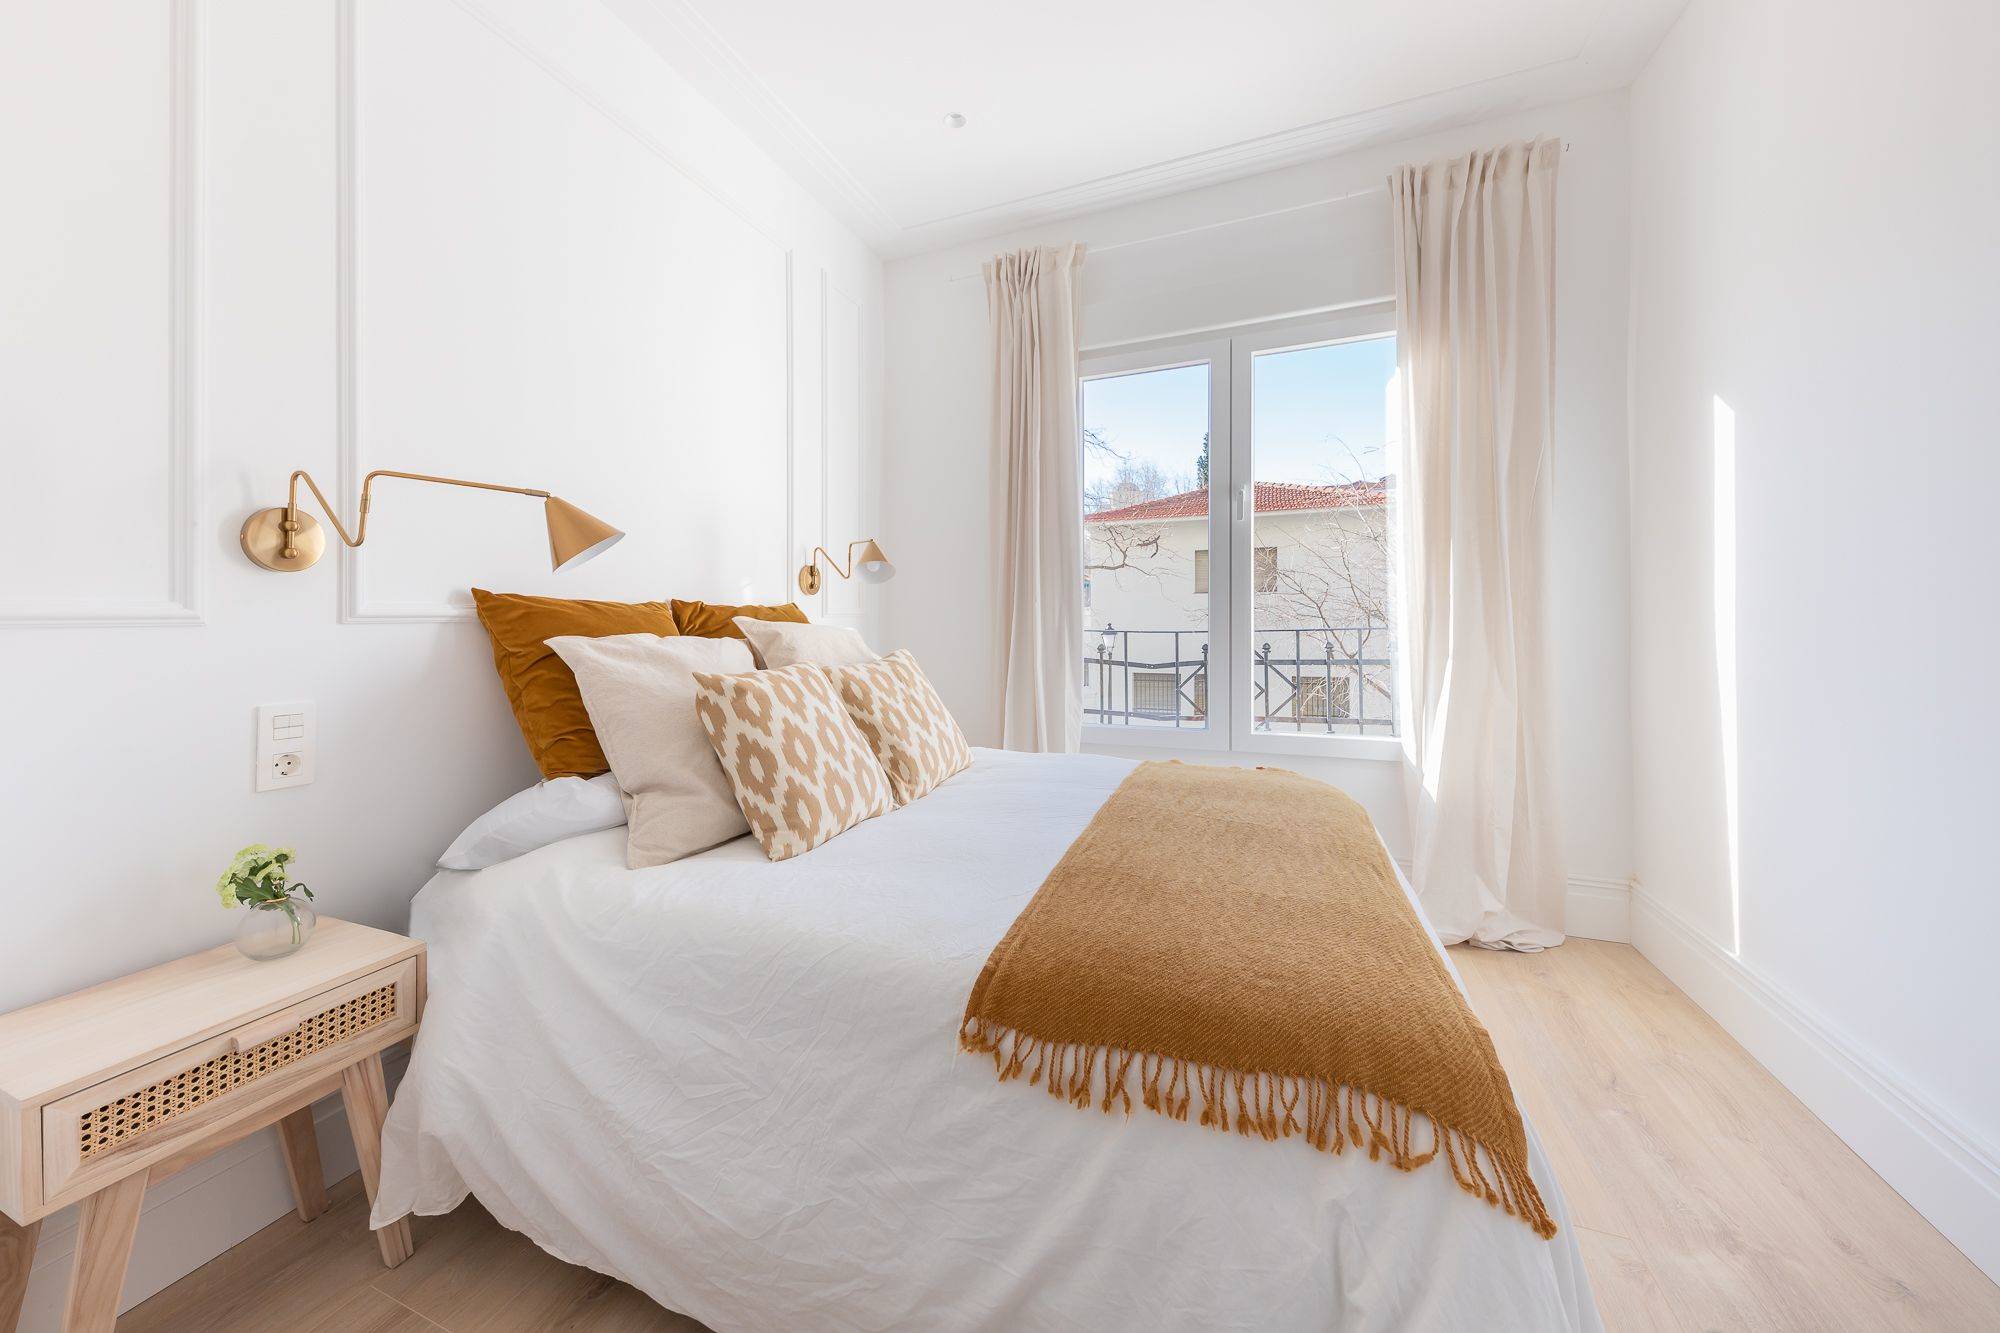 Dormitorio con paredes blancas con molduras, ventana con cortina, mesita de noche de madera y ropa de cama en tonos tierra. 